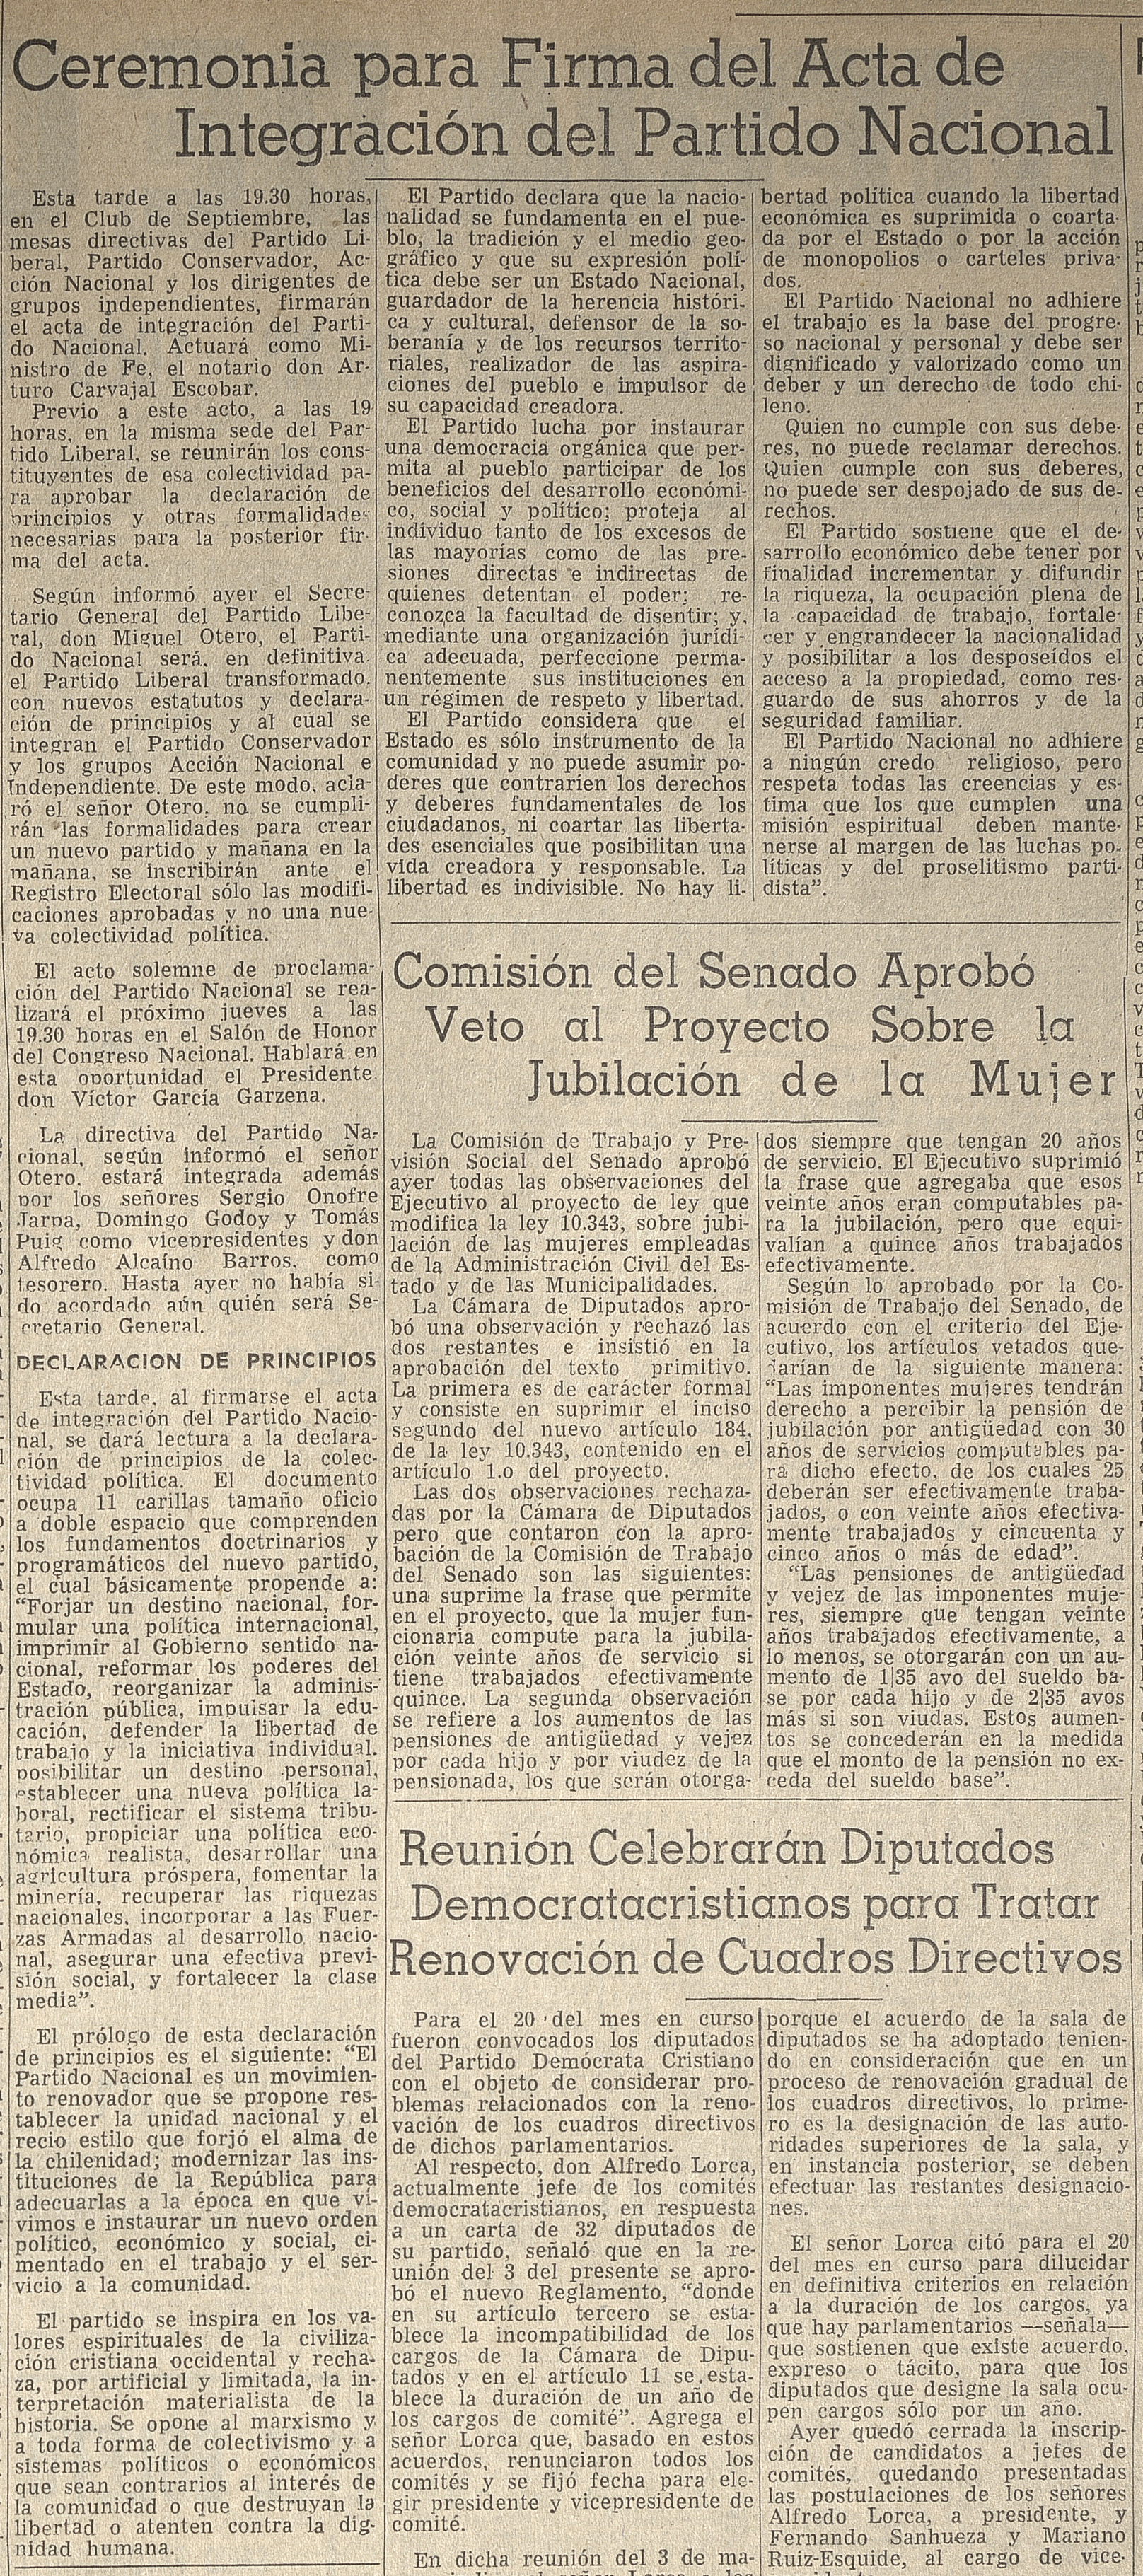 Ceremonia para firmar del Acta de integración Nacional, El Mercurio, Santiago, martes 10 de mayo de 1966.